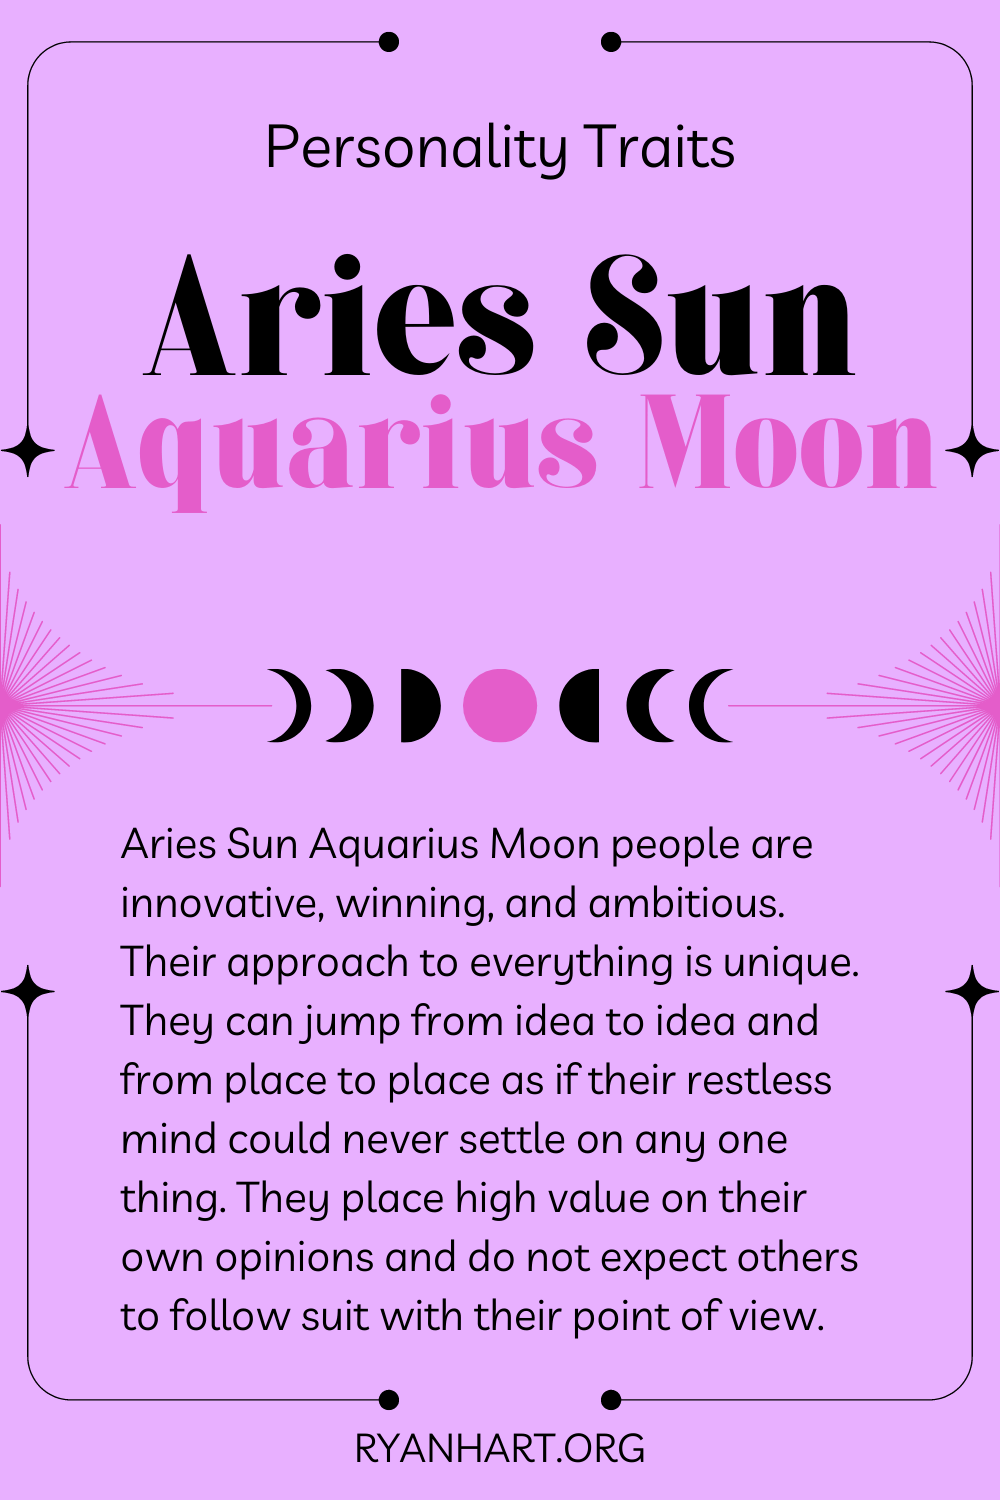 Aries Sun Aquarius Moon Description